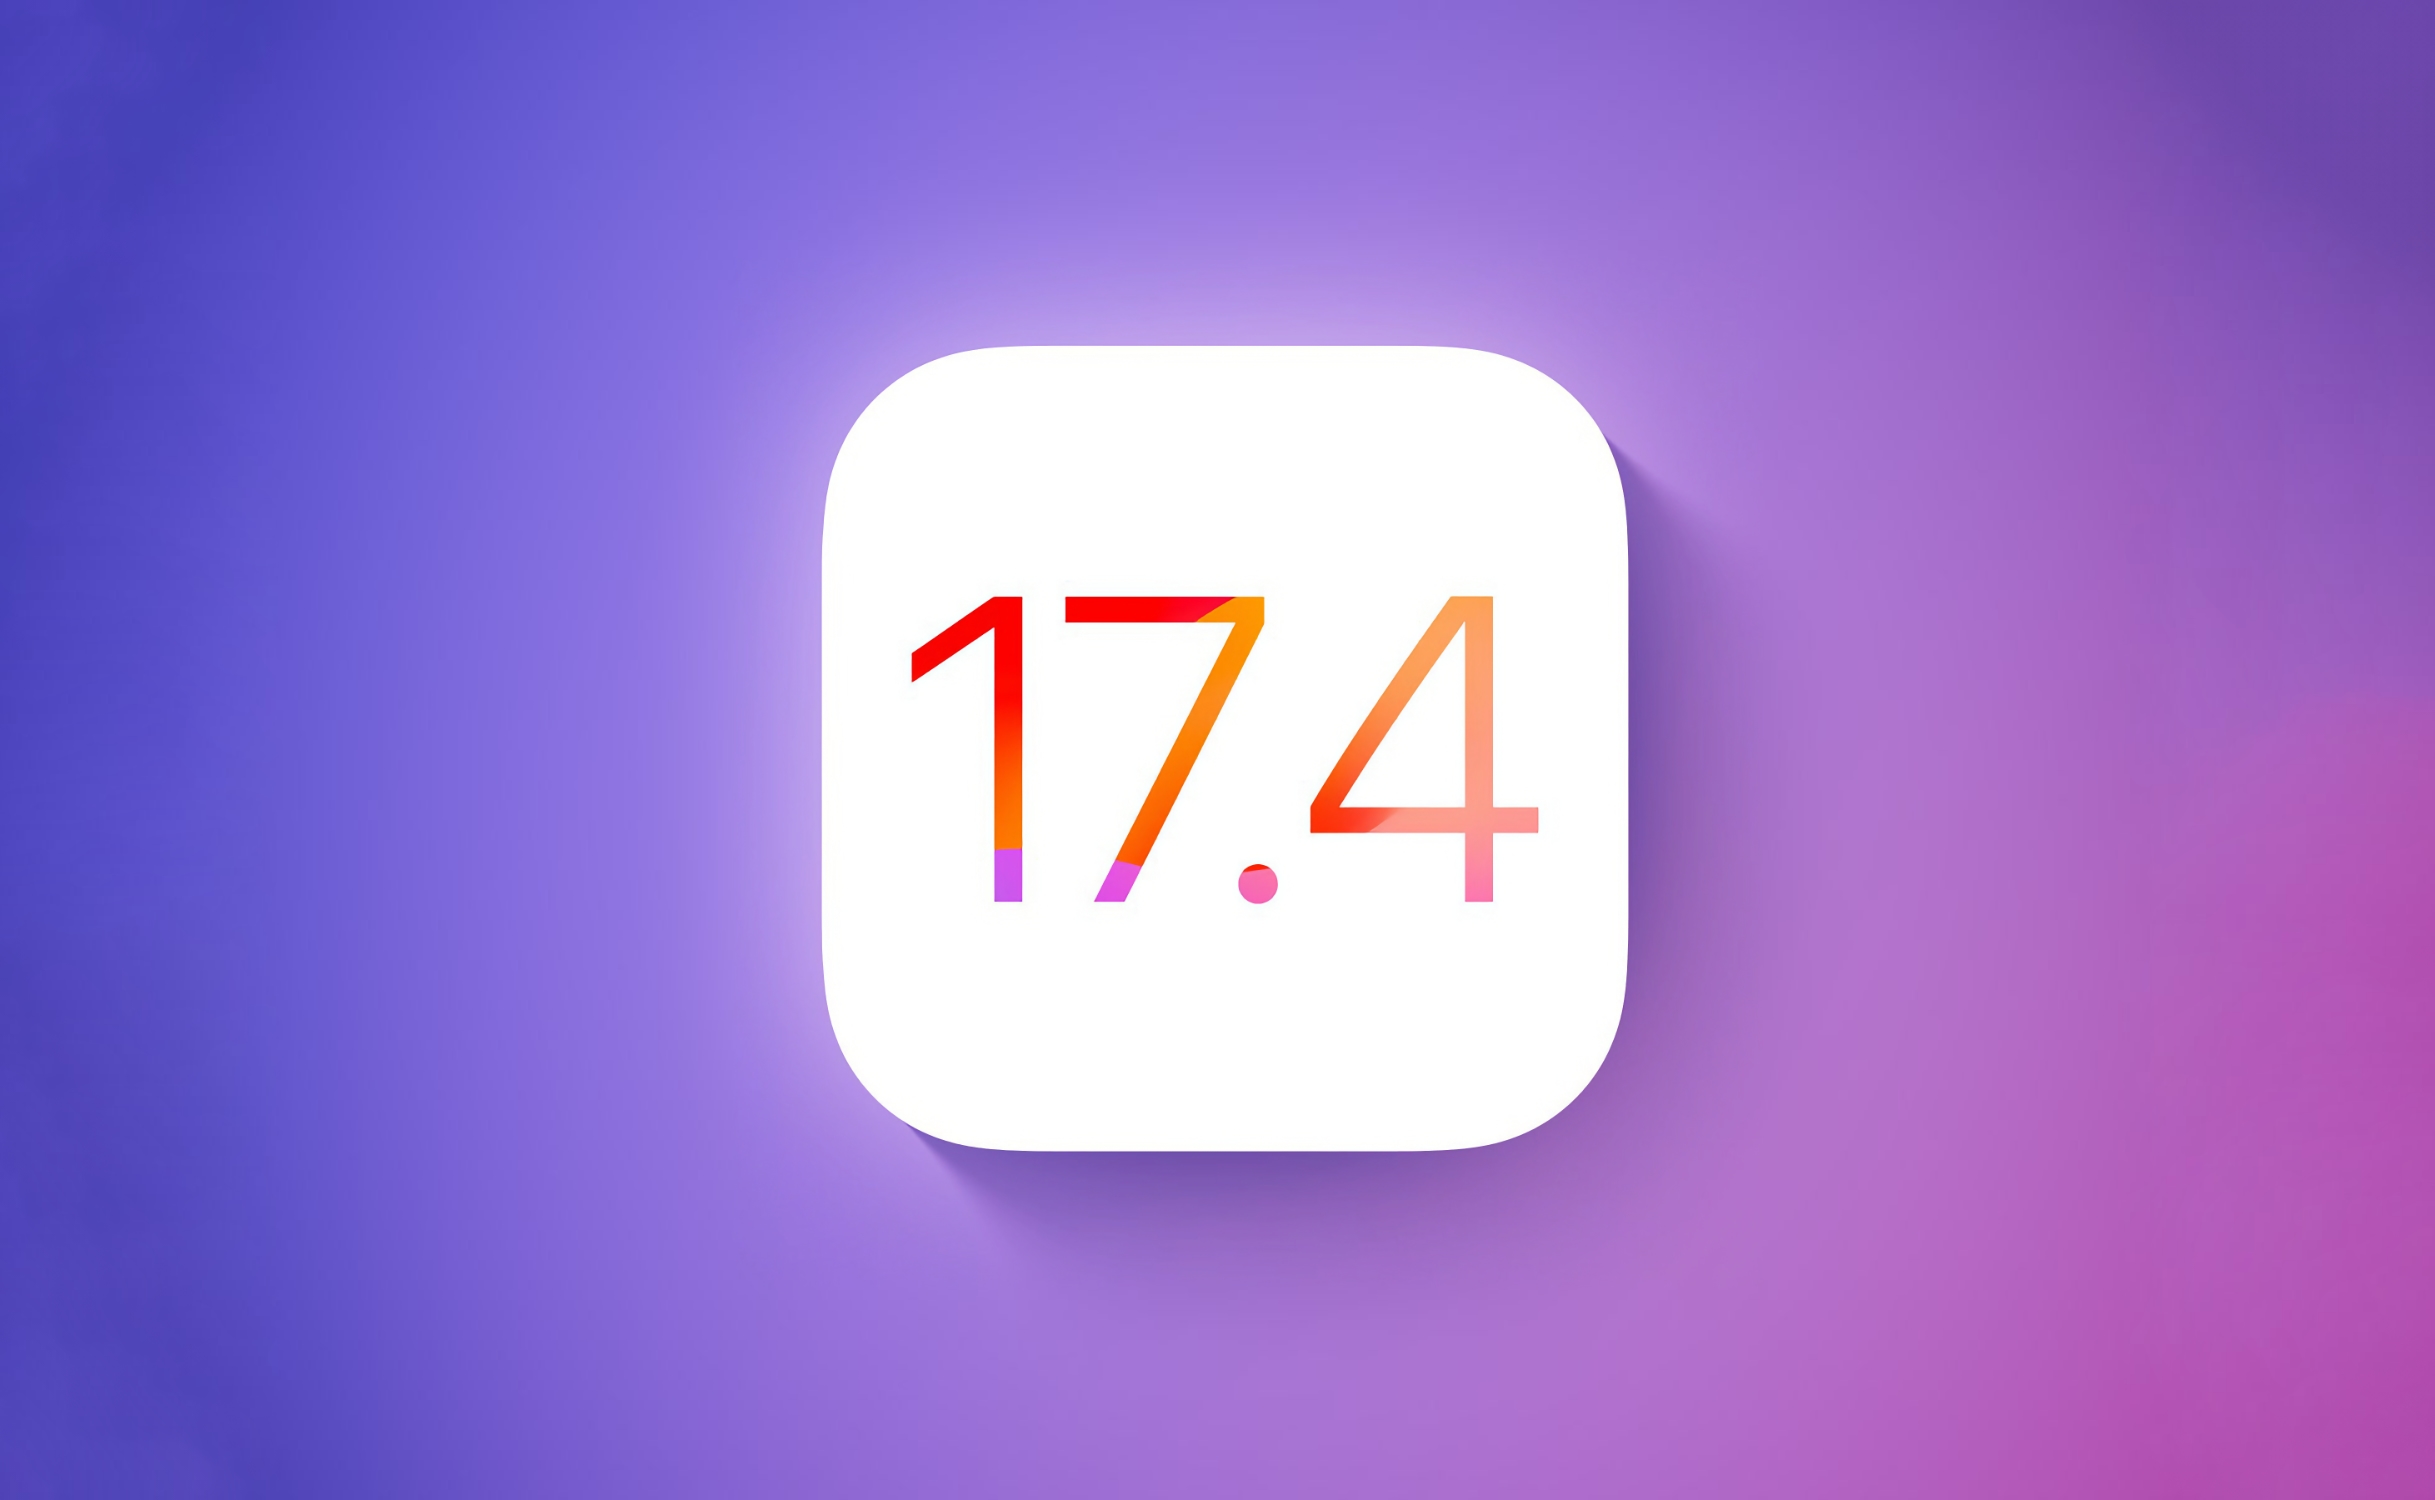 Den stabile versjonen av iOS 17.4 er ute: hva er nytt?